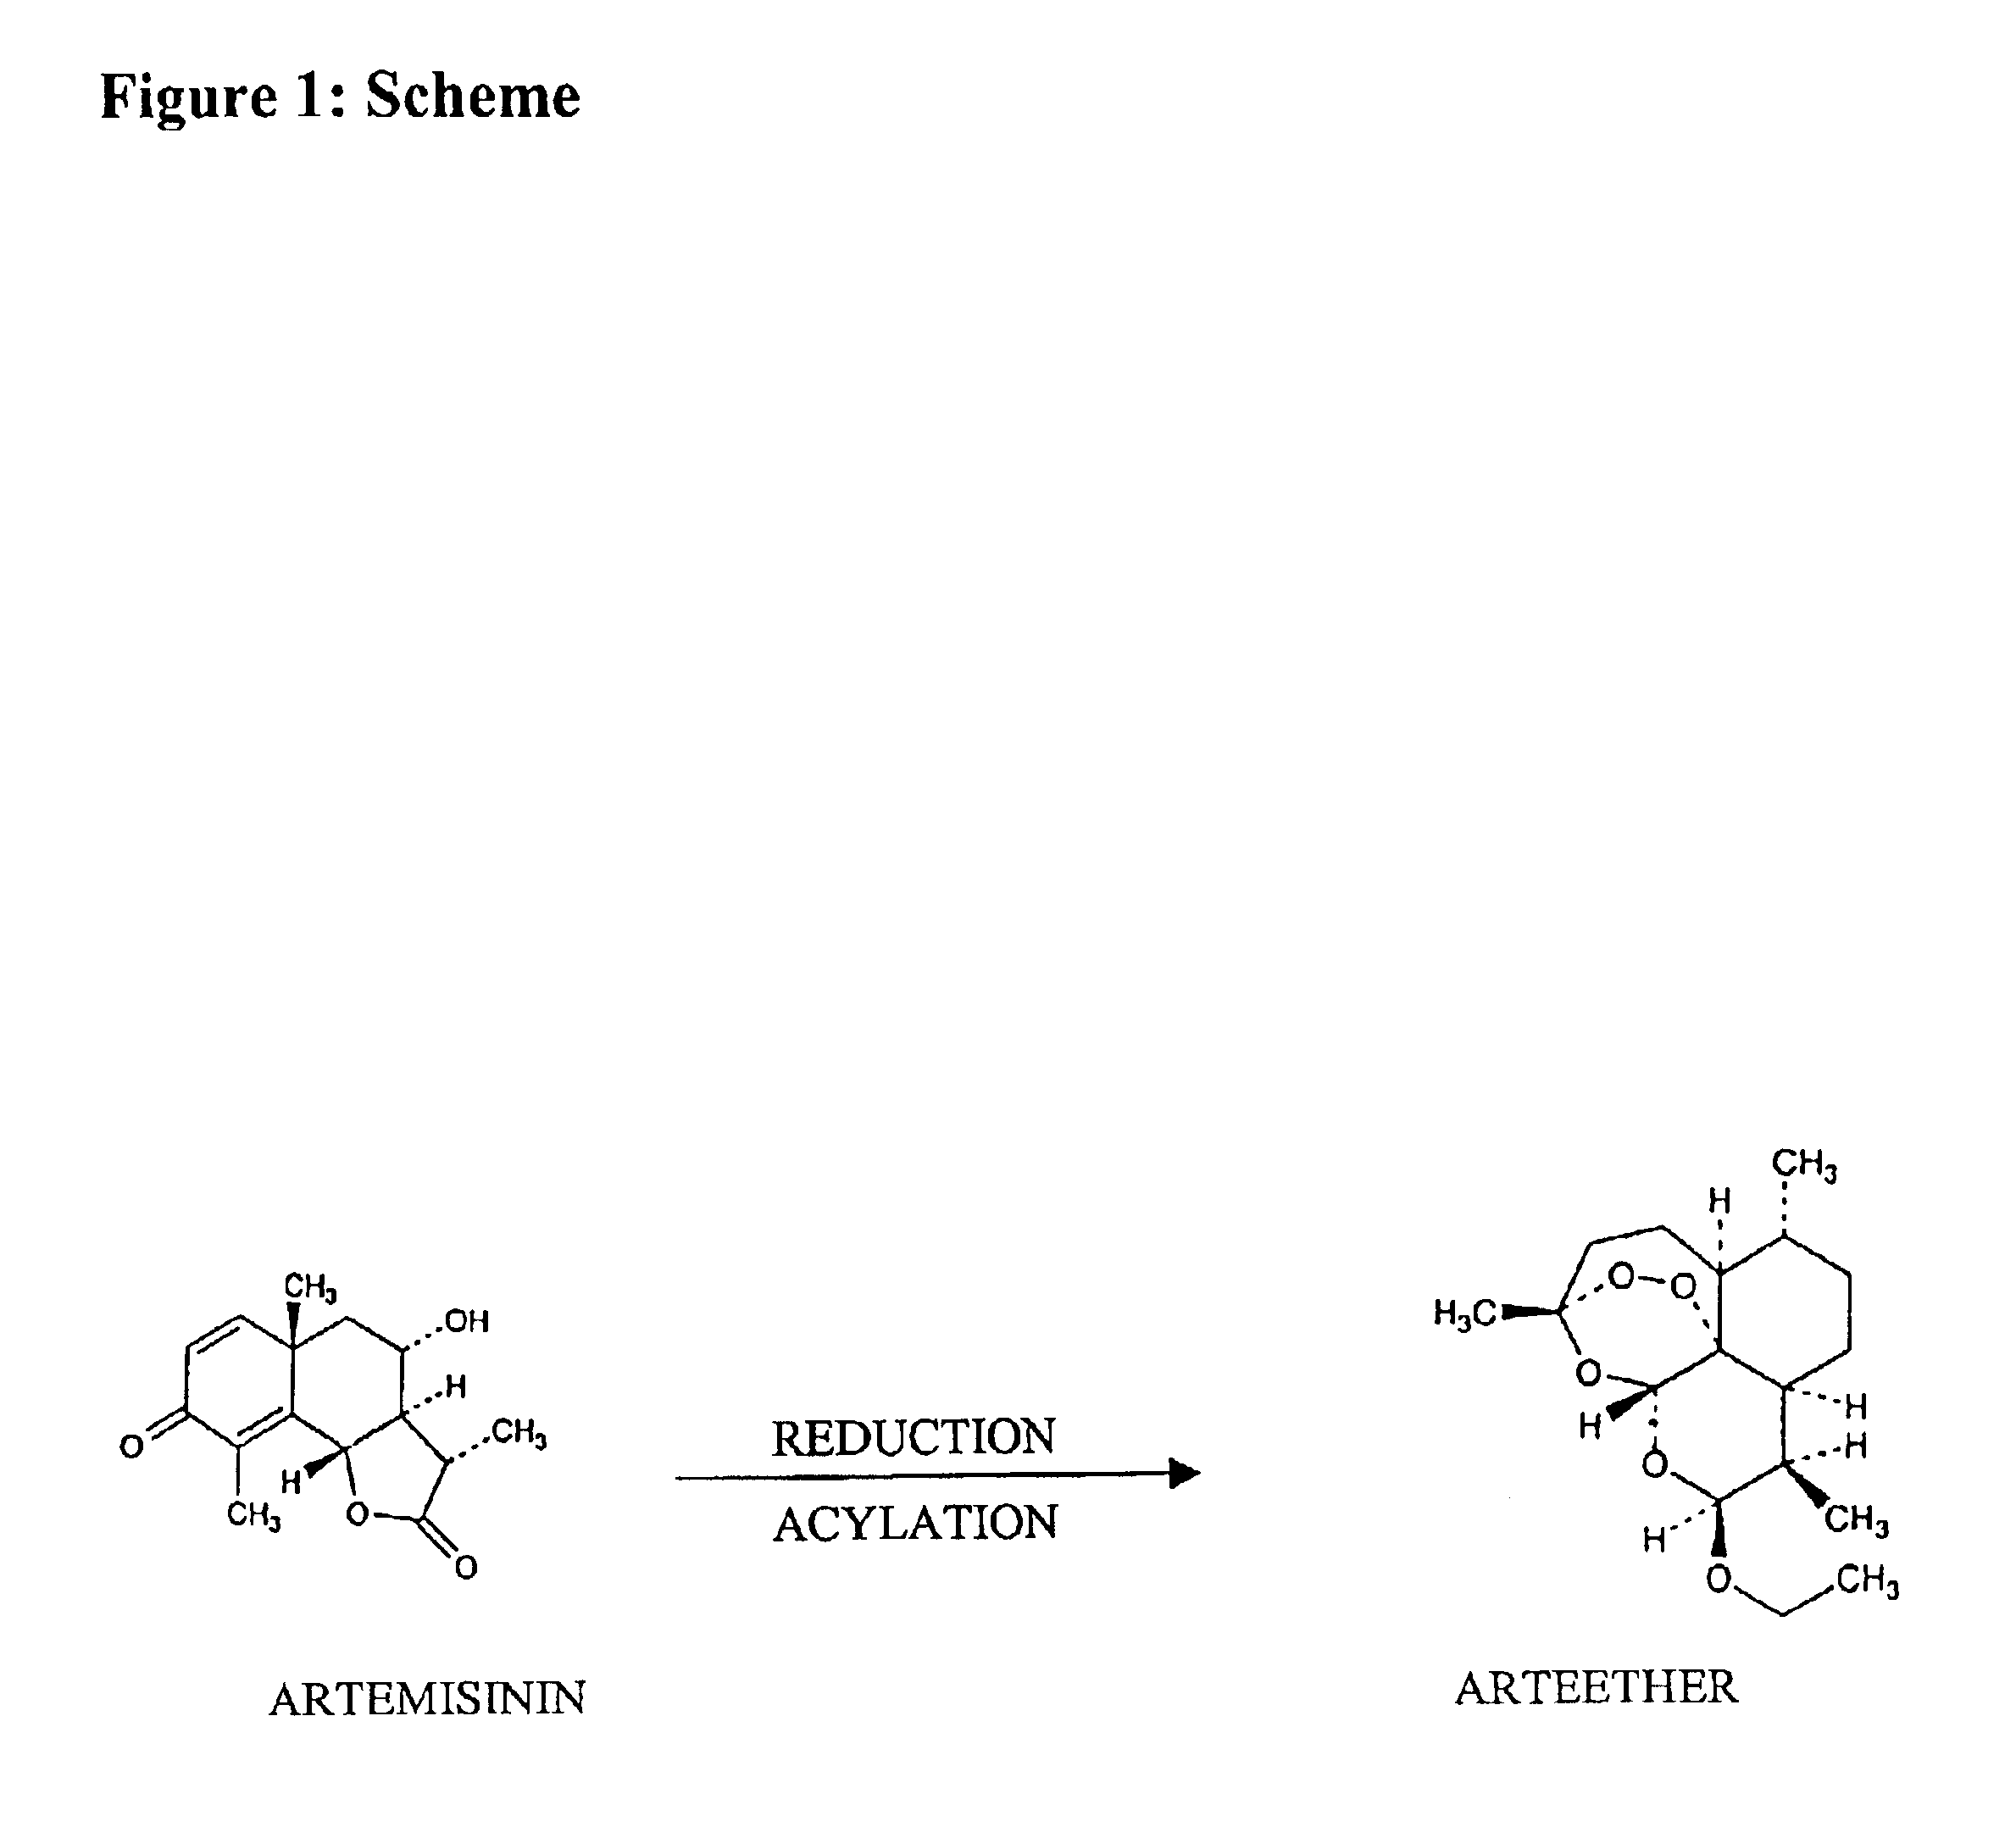 Single pot conversion of artemisinin into arteether